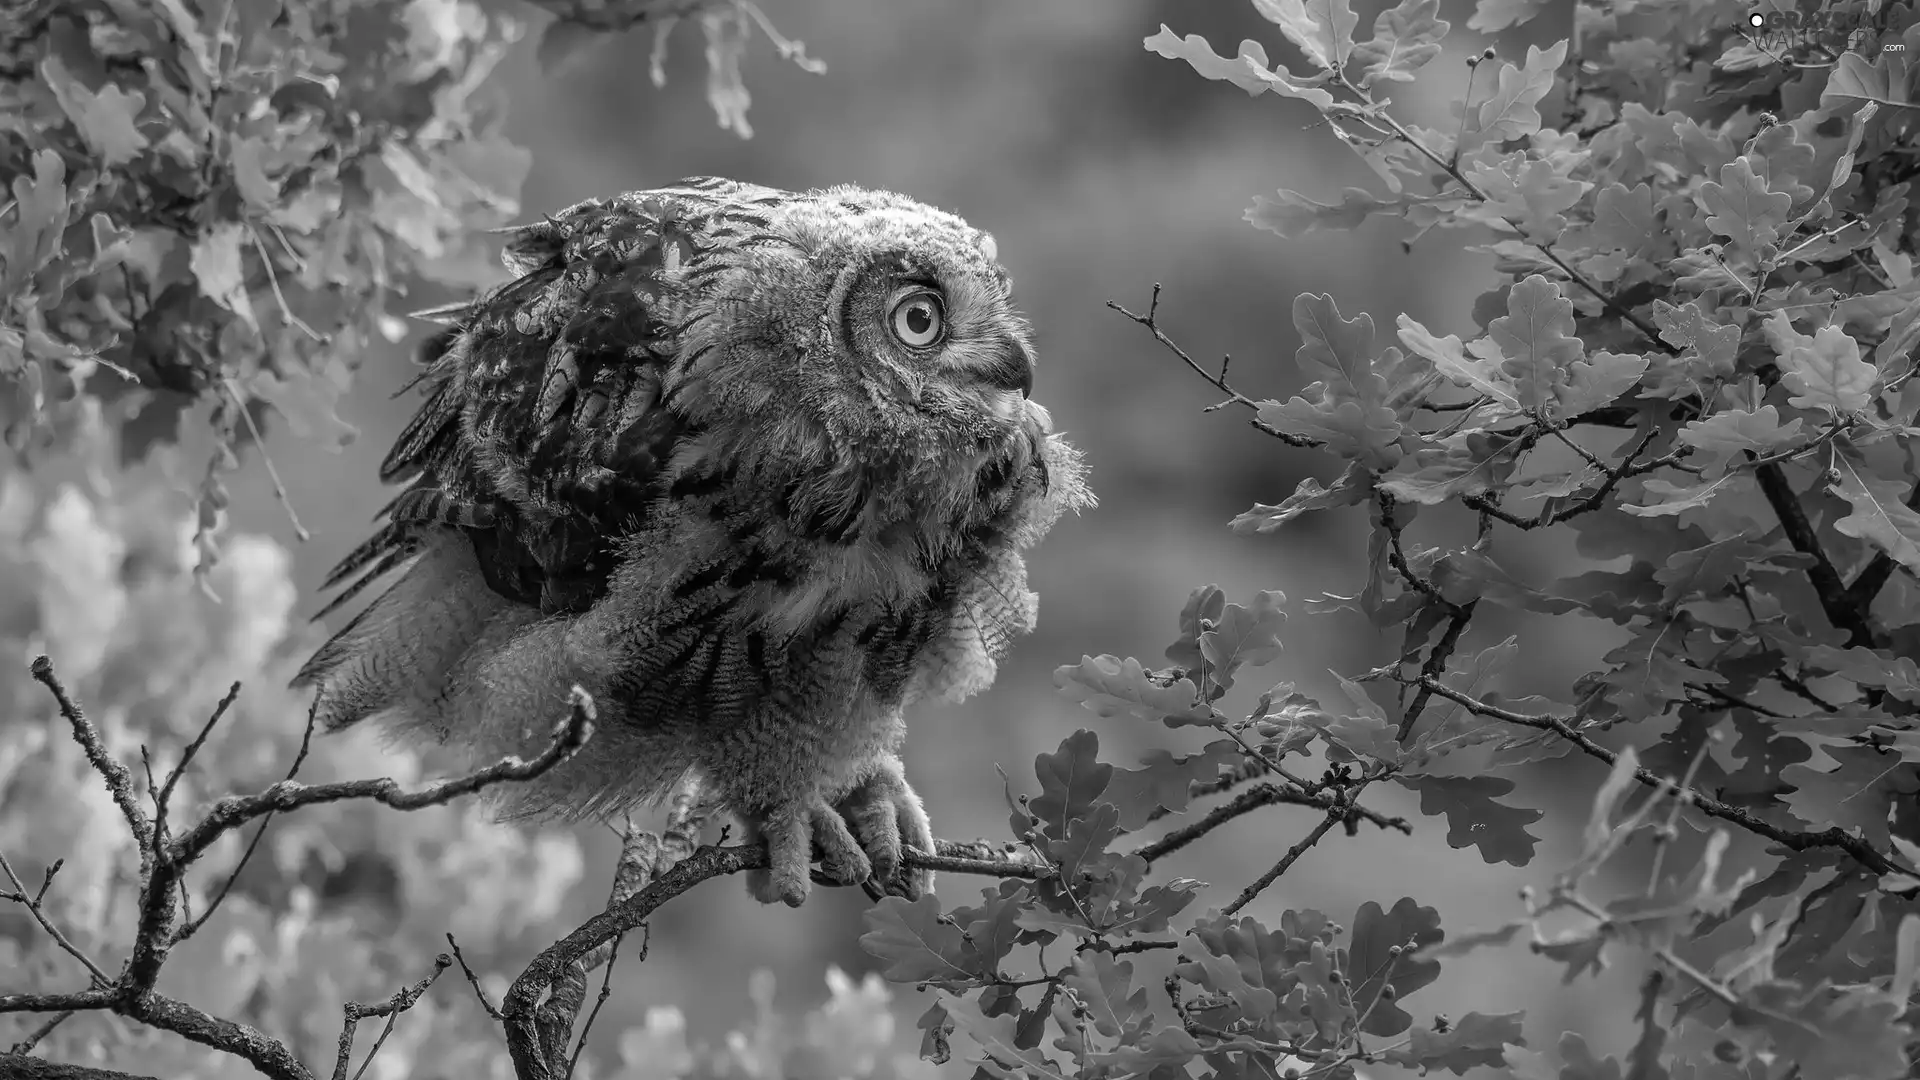 Eurasian Eagle-Owl, owl, oak, Leaf, trees, young